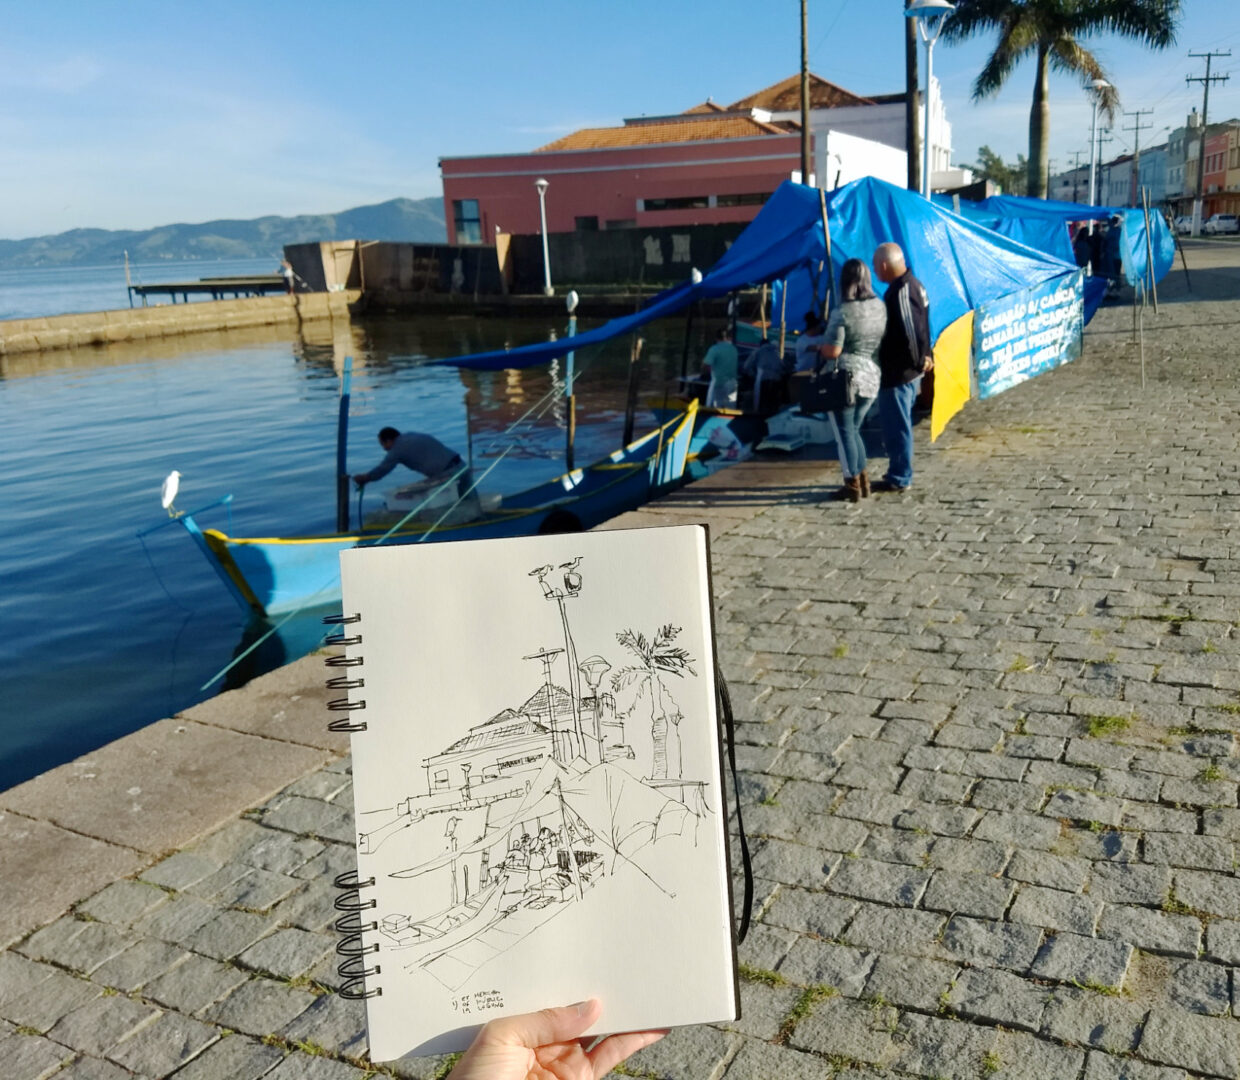 Foto do caderno em primeiro plano com barco e tenda de do peixeiro amarrada na doca